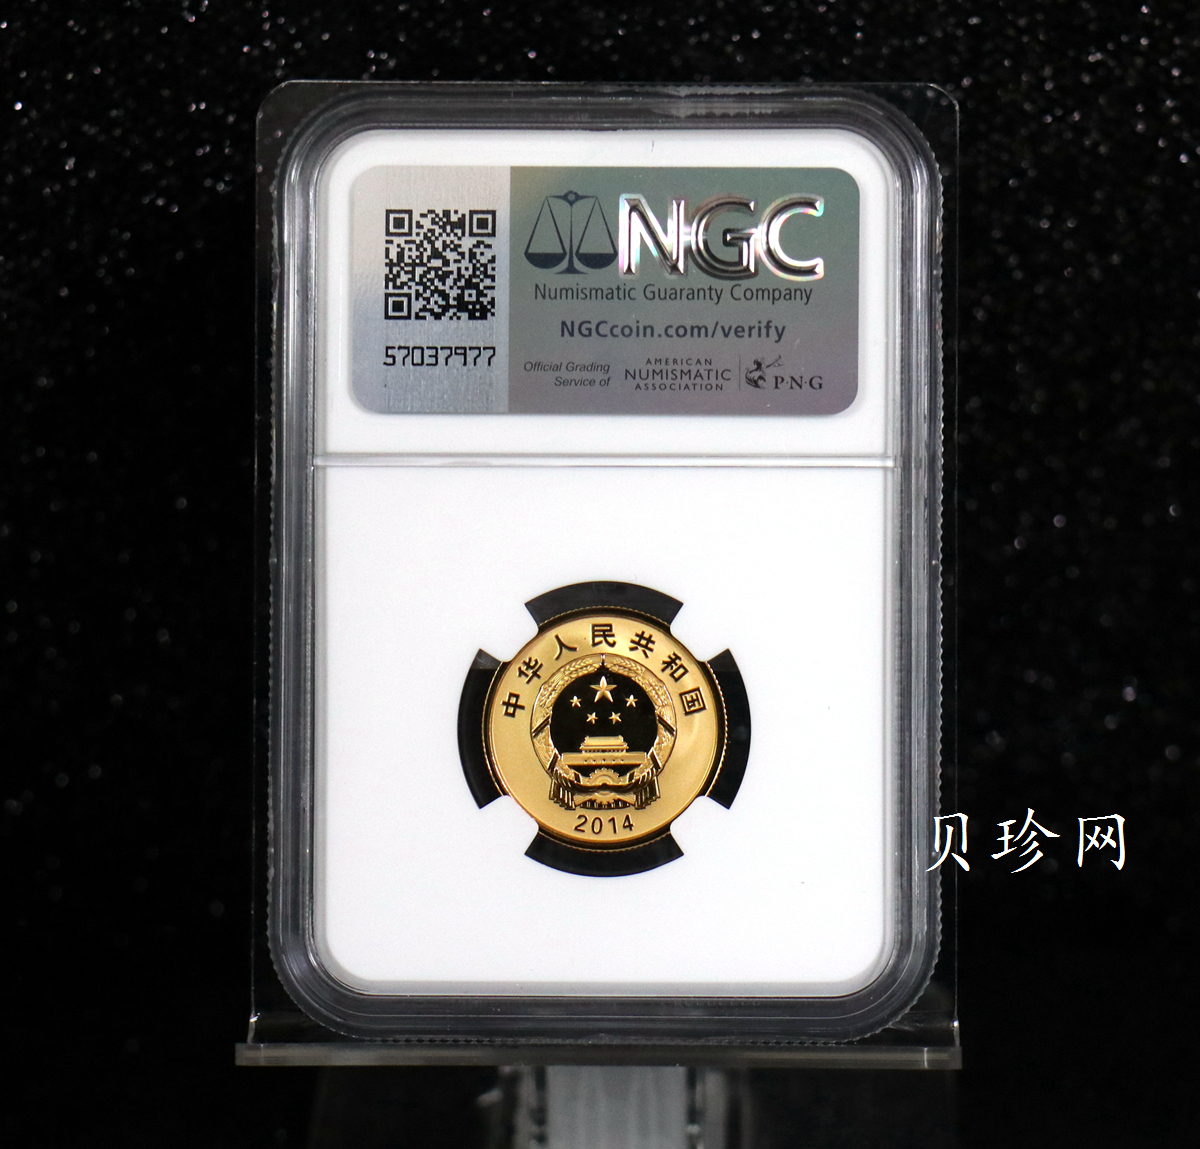 【140201】2014年中国探月首次落月成功纪念1/4盎司精制金币